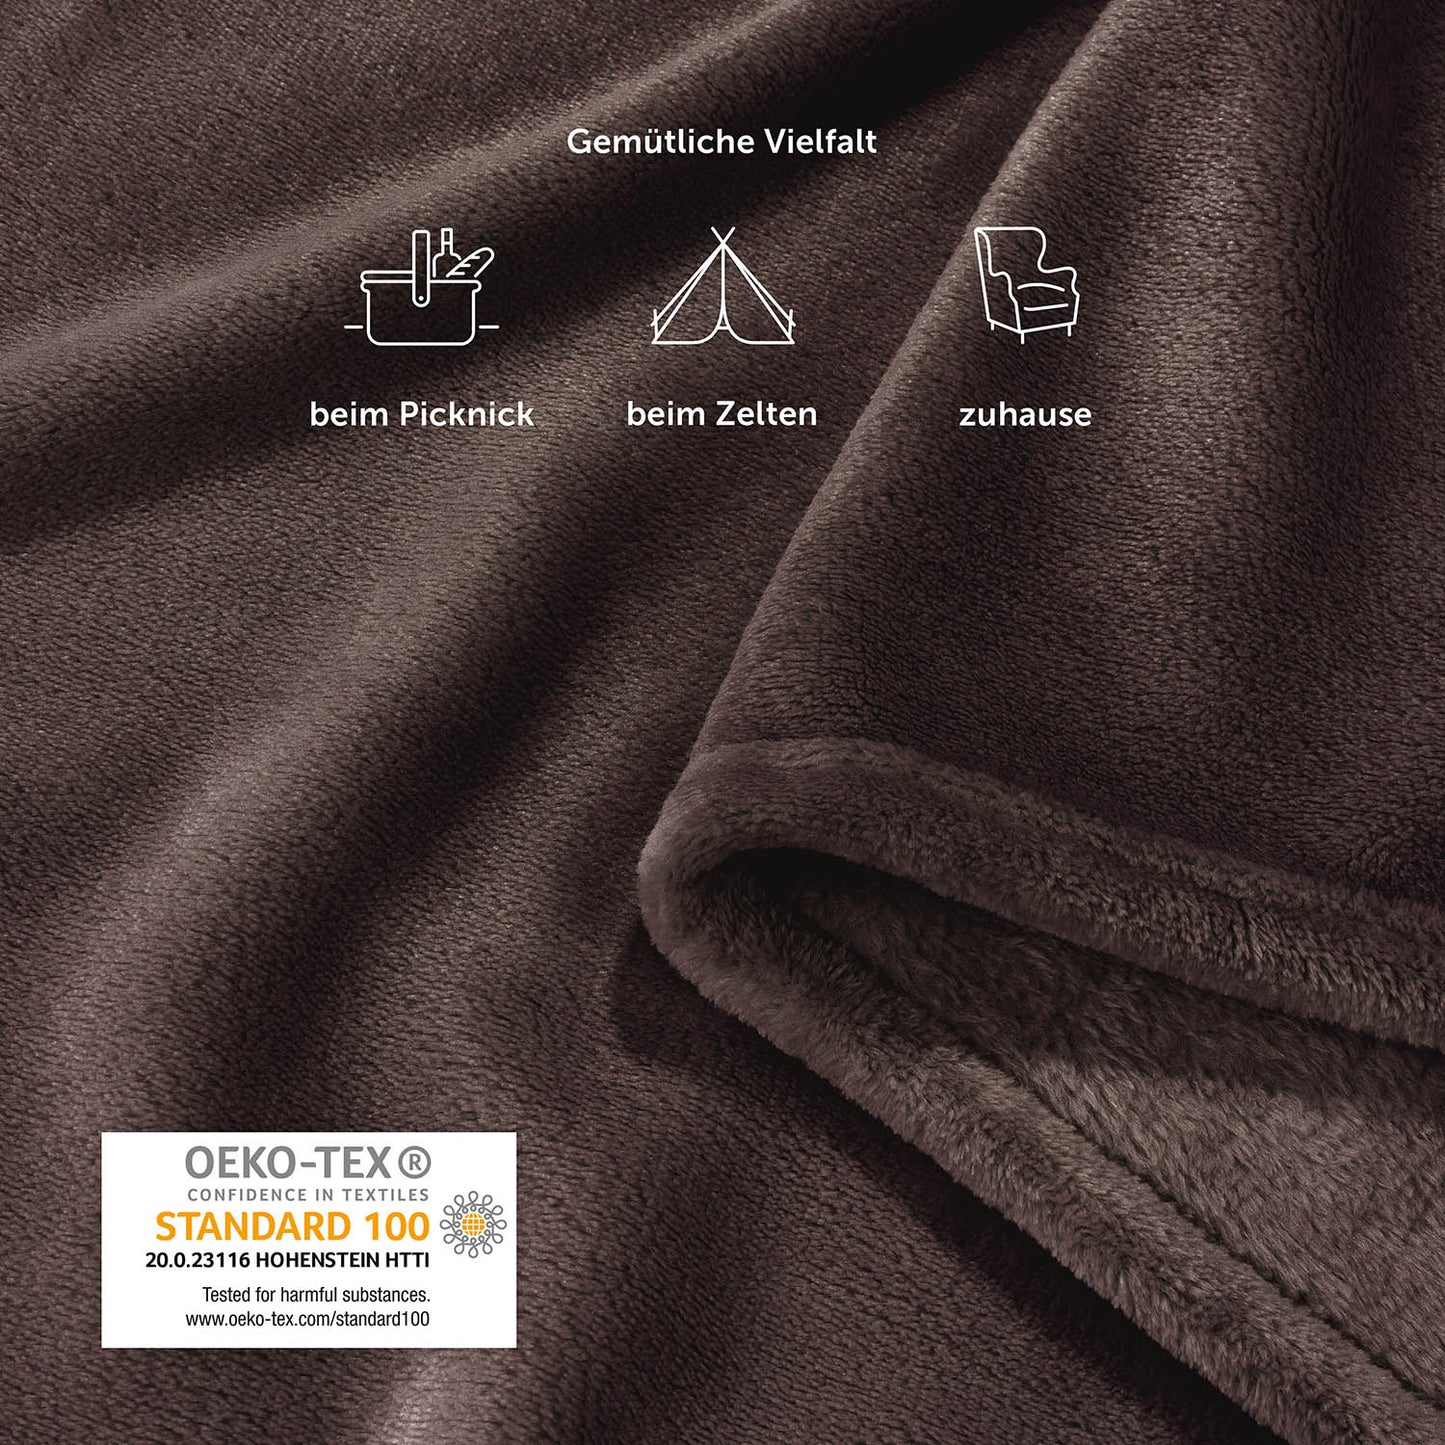 Nahaufnahme einer braunen Fleece-Kuscheldecke mit Piktogrammen, die Verwendung beim Picknick, Zelten und zu Hause anzeigen, neben dem OEKO-TEX Siegel.